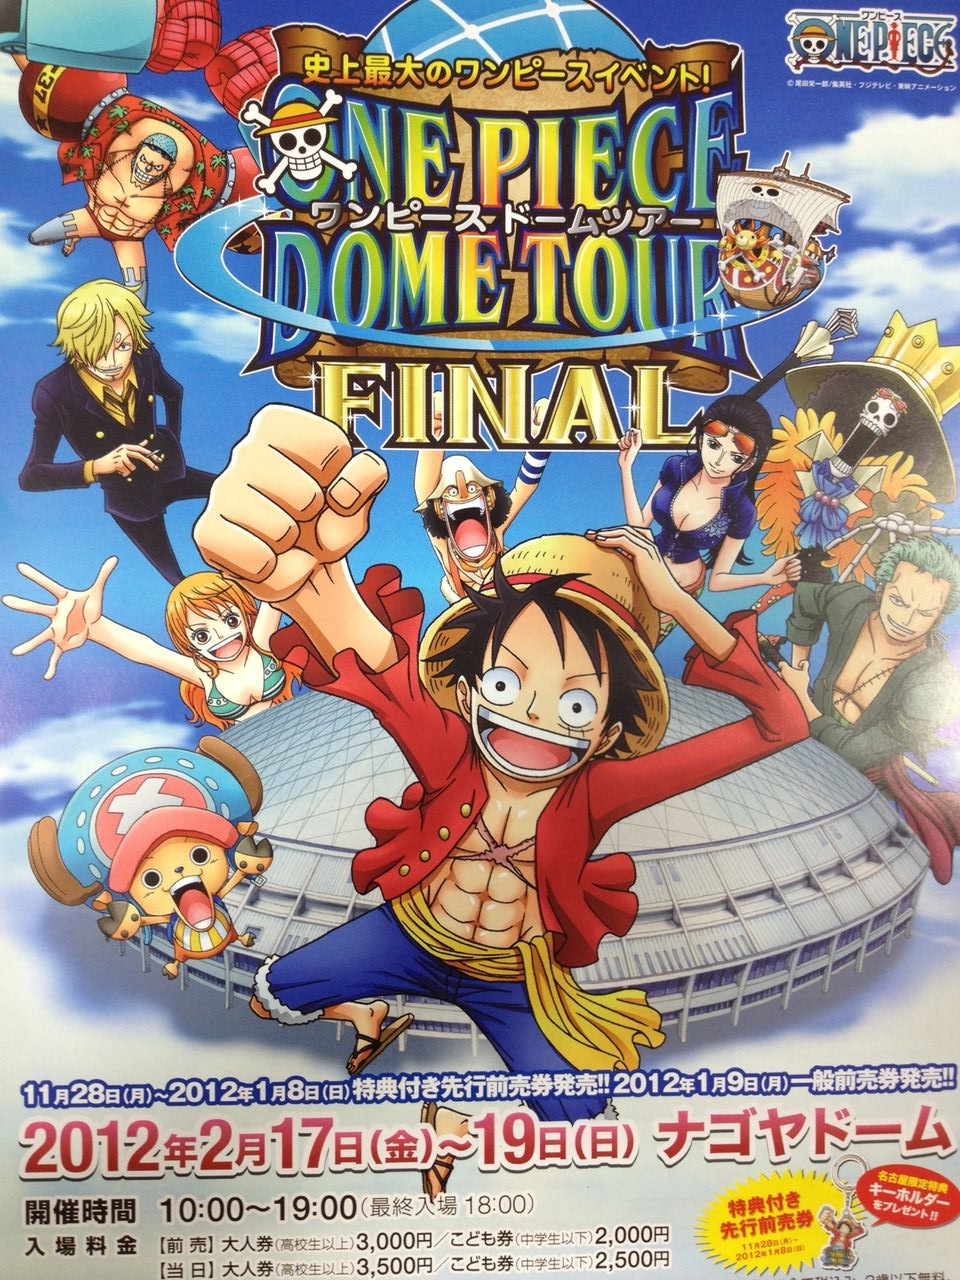 ワンピースドームツアーファイナル One Piece Dome Tour Final ナゴヤドーム 本屋さんはきょうも元気